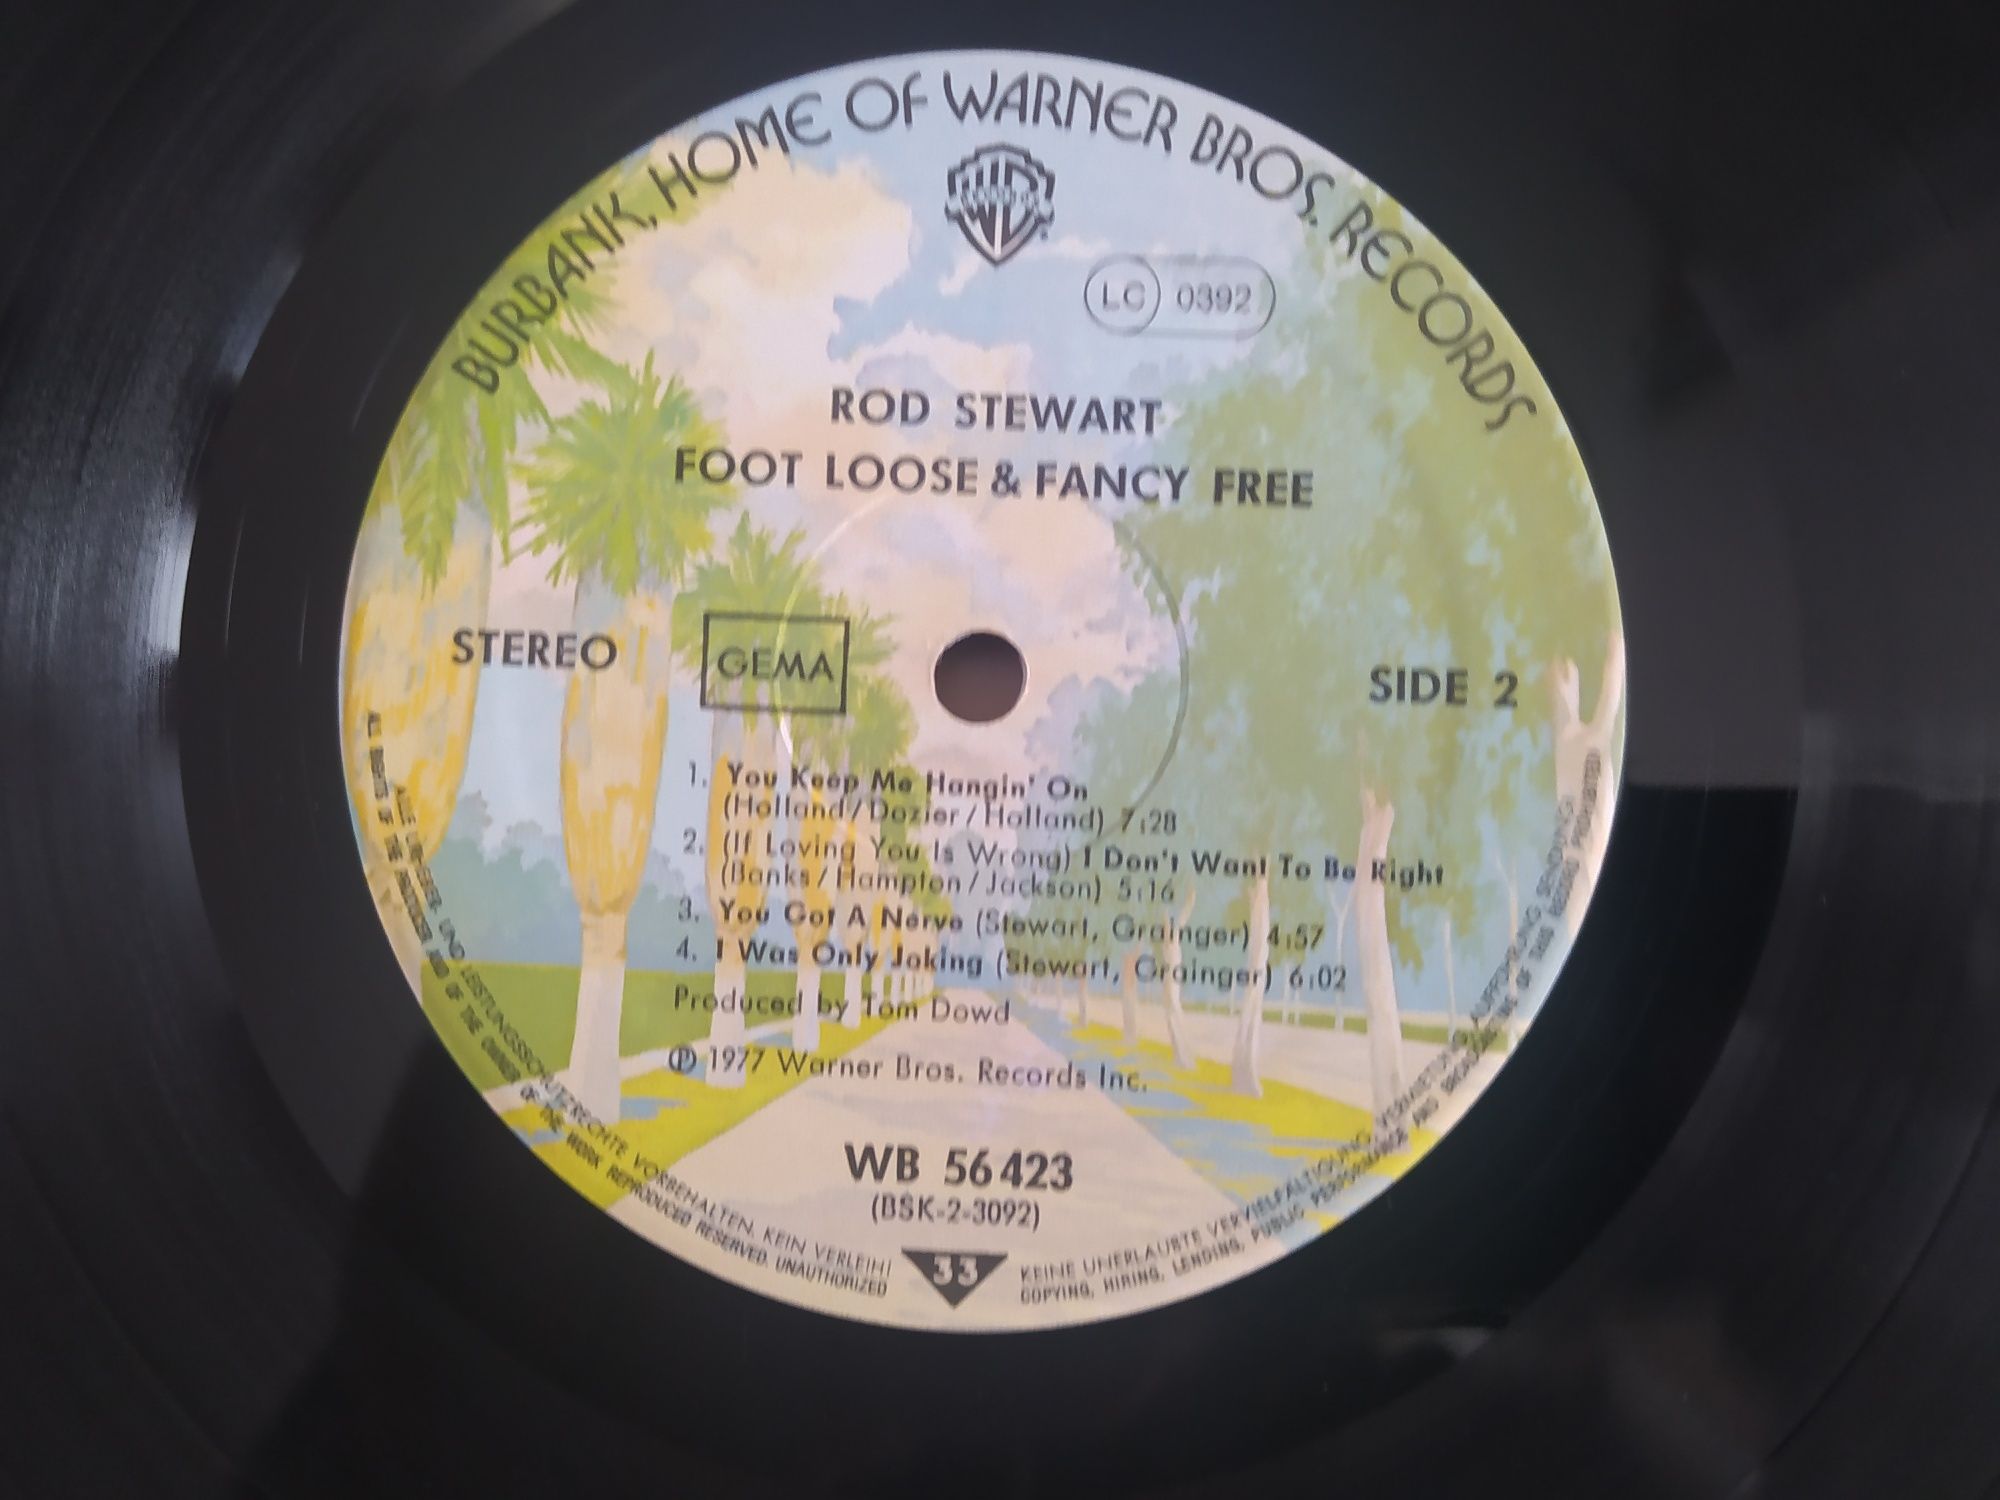 Rod Stewart – Foot Loose & Fancy Free Vinyl